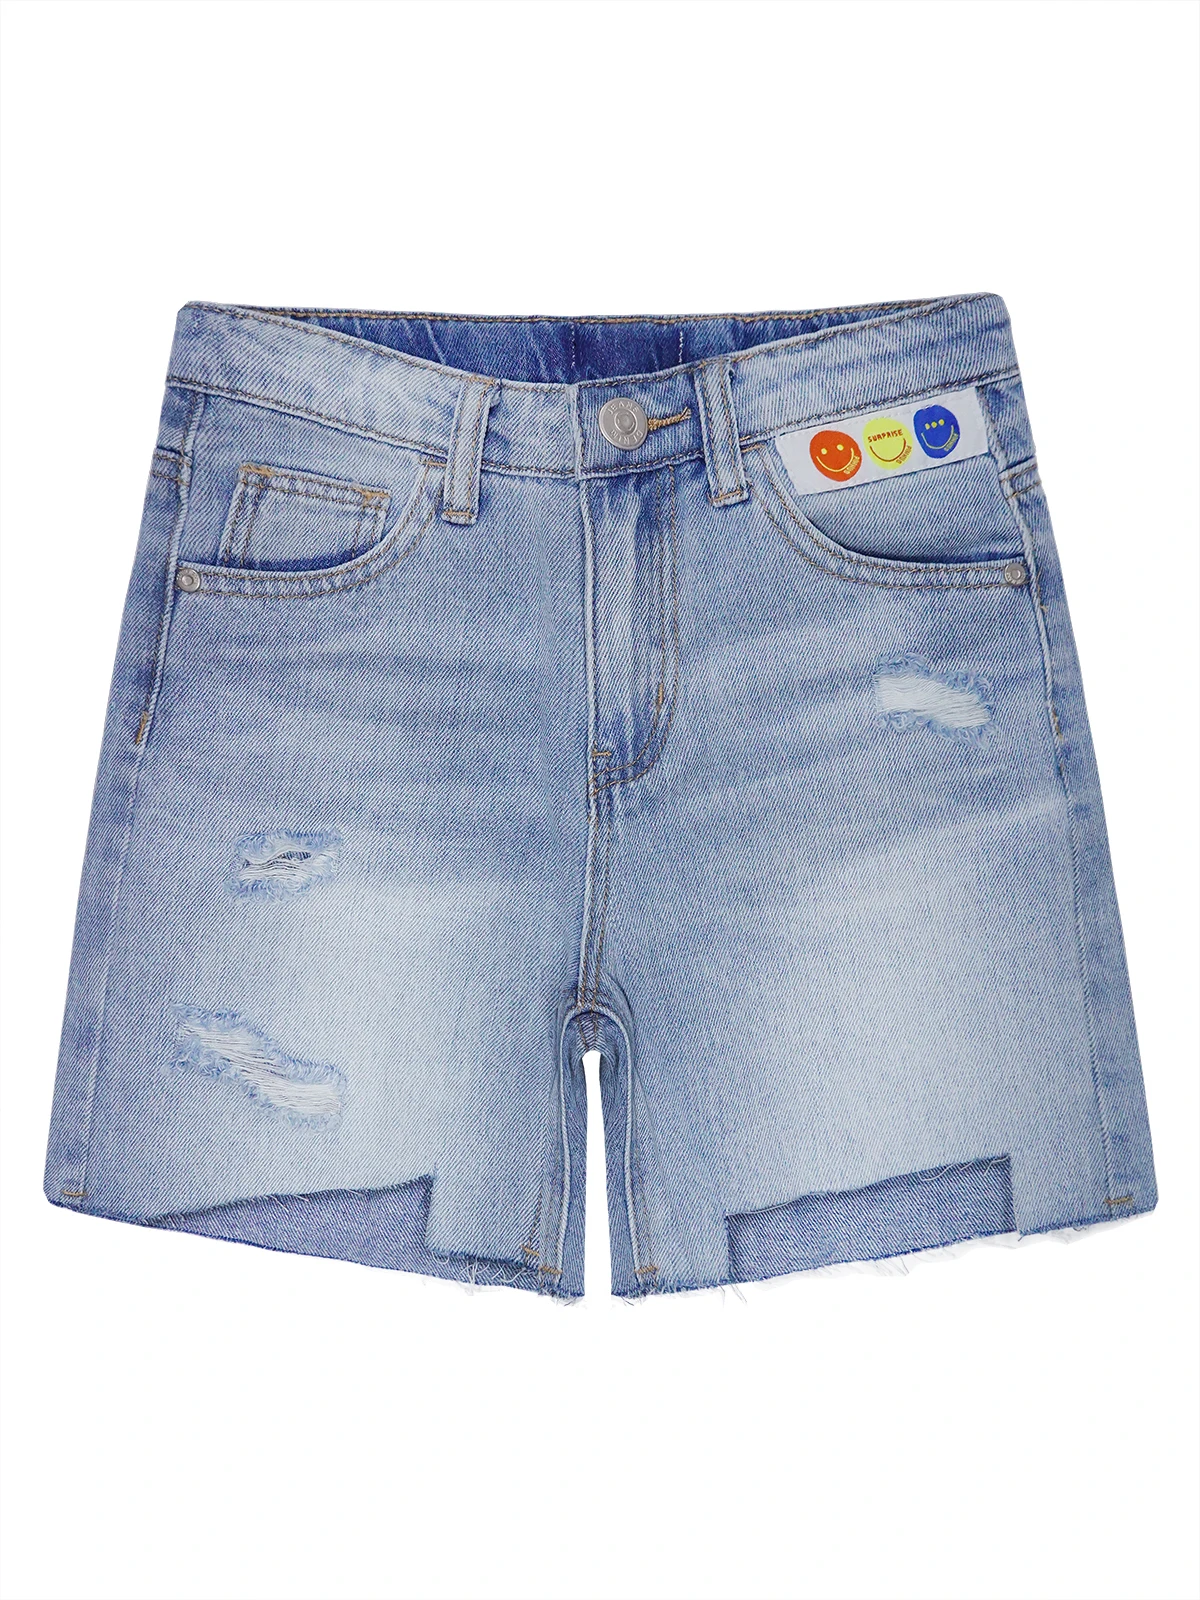 

Джинсовые шорты KIDSCOOL для маленьких девочек и мальчиков, рваные потертые летние джинсовые брюки светло-голубого цвета с вырезами на подоле